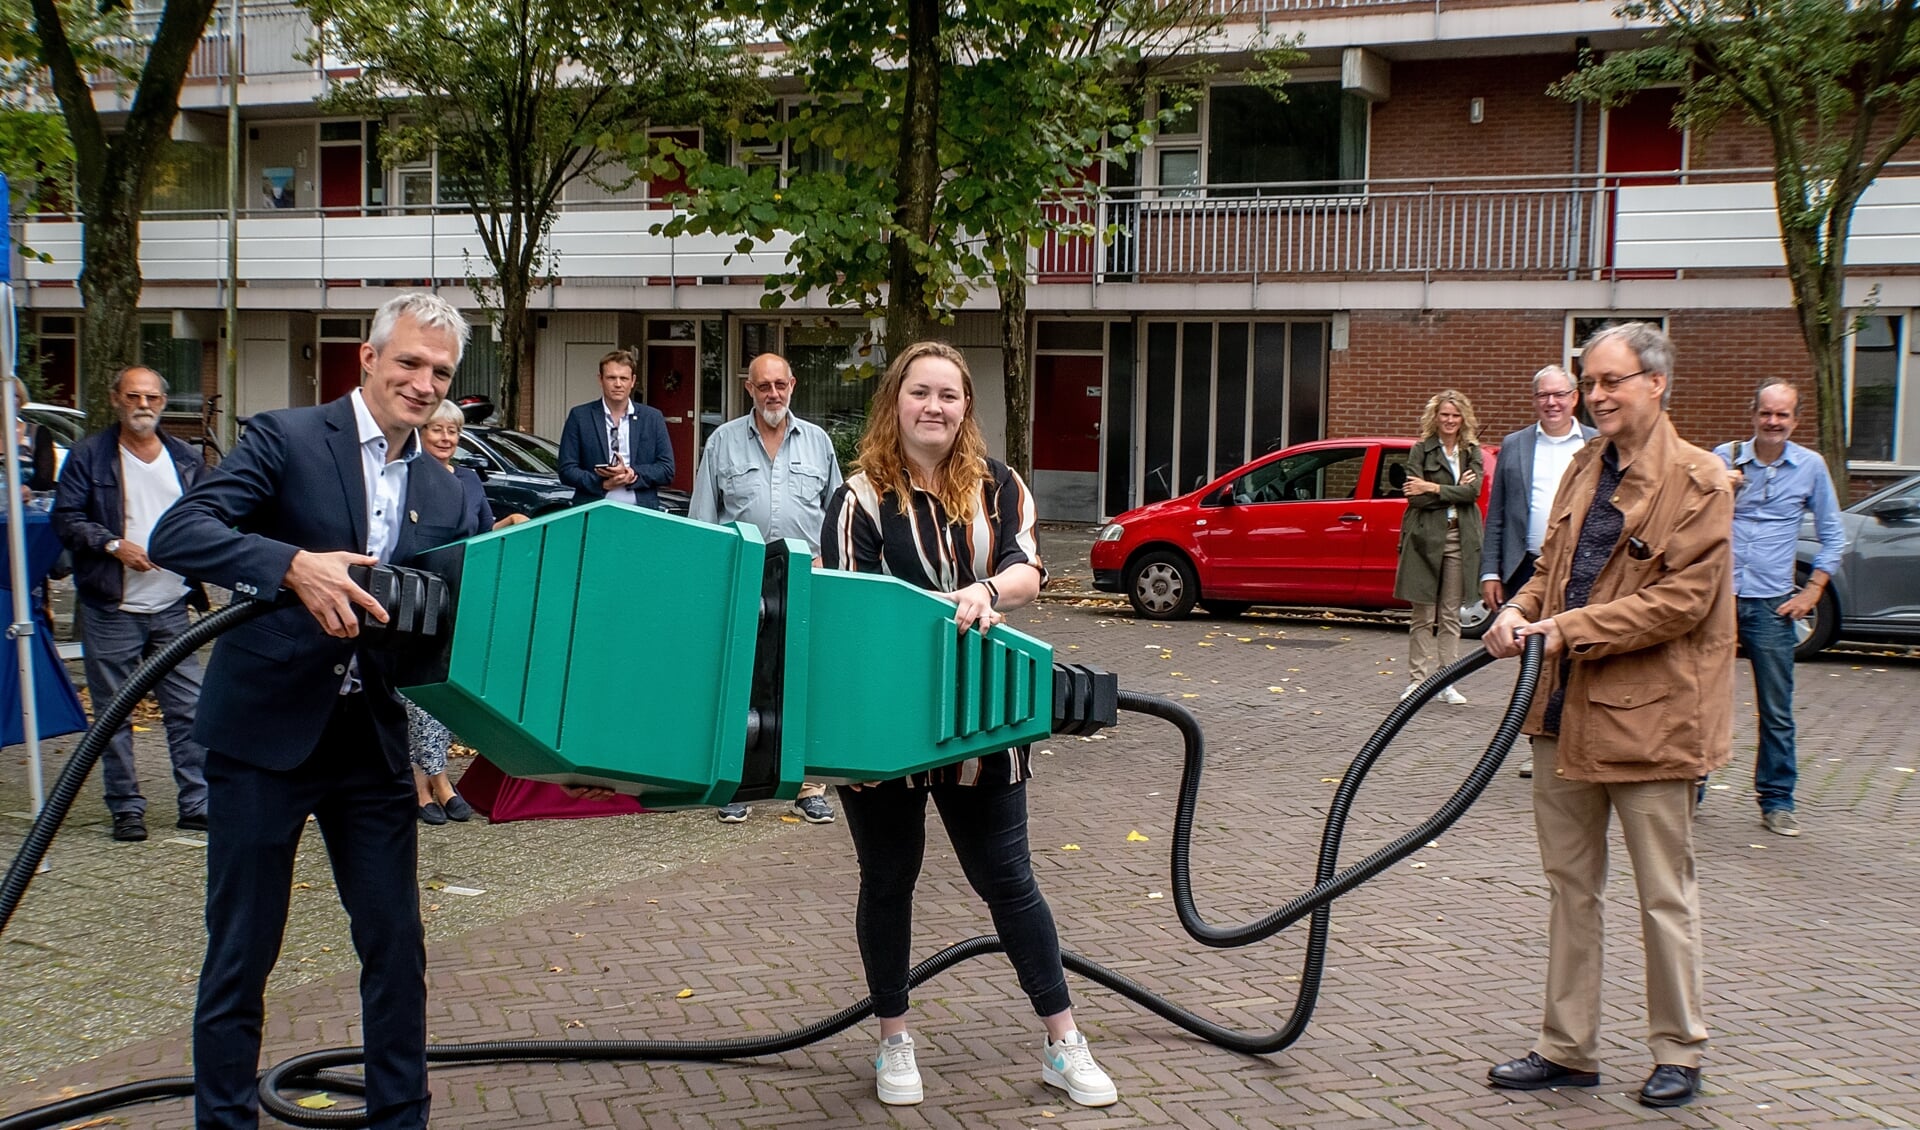 Gedeputeerde Berend Potjer (GroenLinks) verricht samen met bewoners Mariëlle van Gijzen en Egbert Boonstra de openingshandeling voor de  zonnestroominstallatie aan de Langedijkdreef.